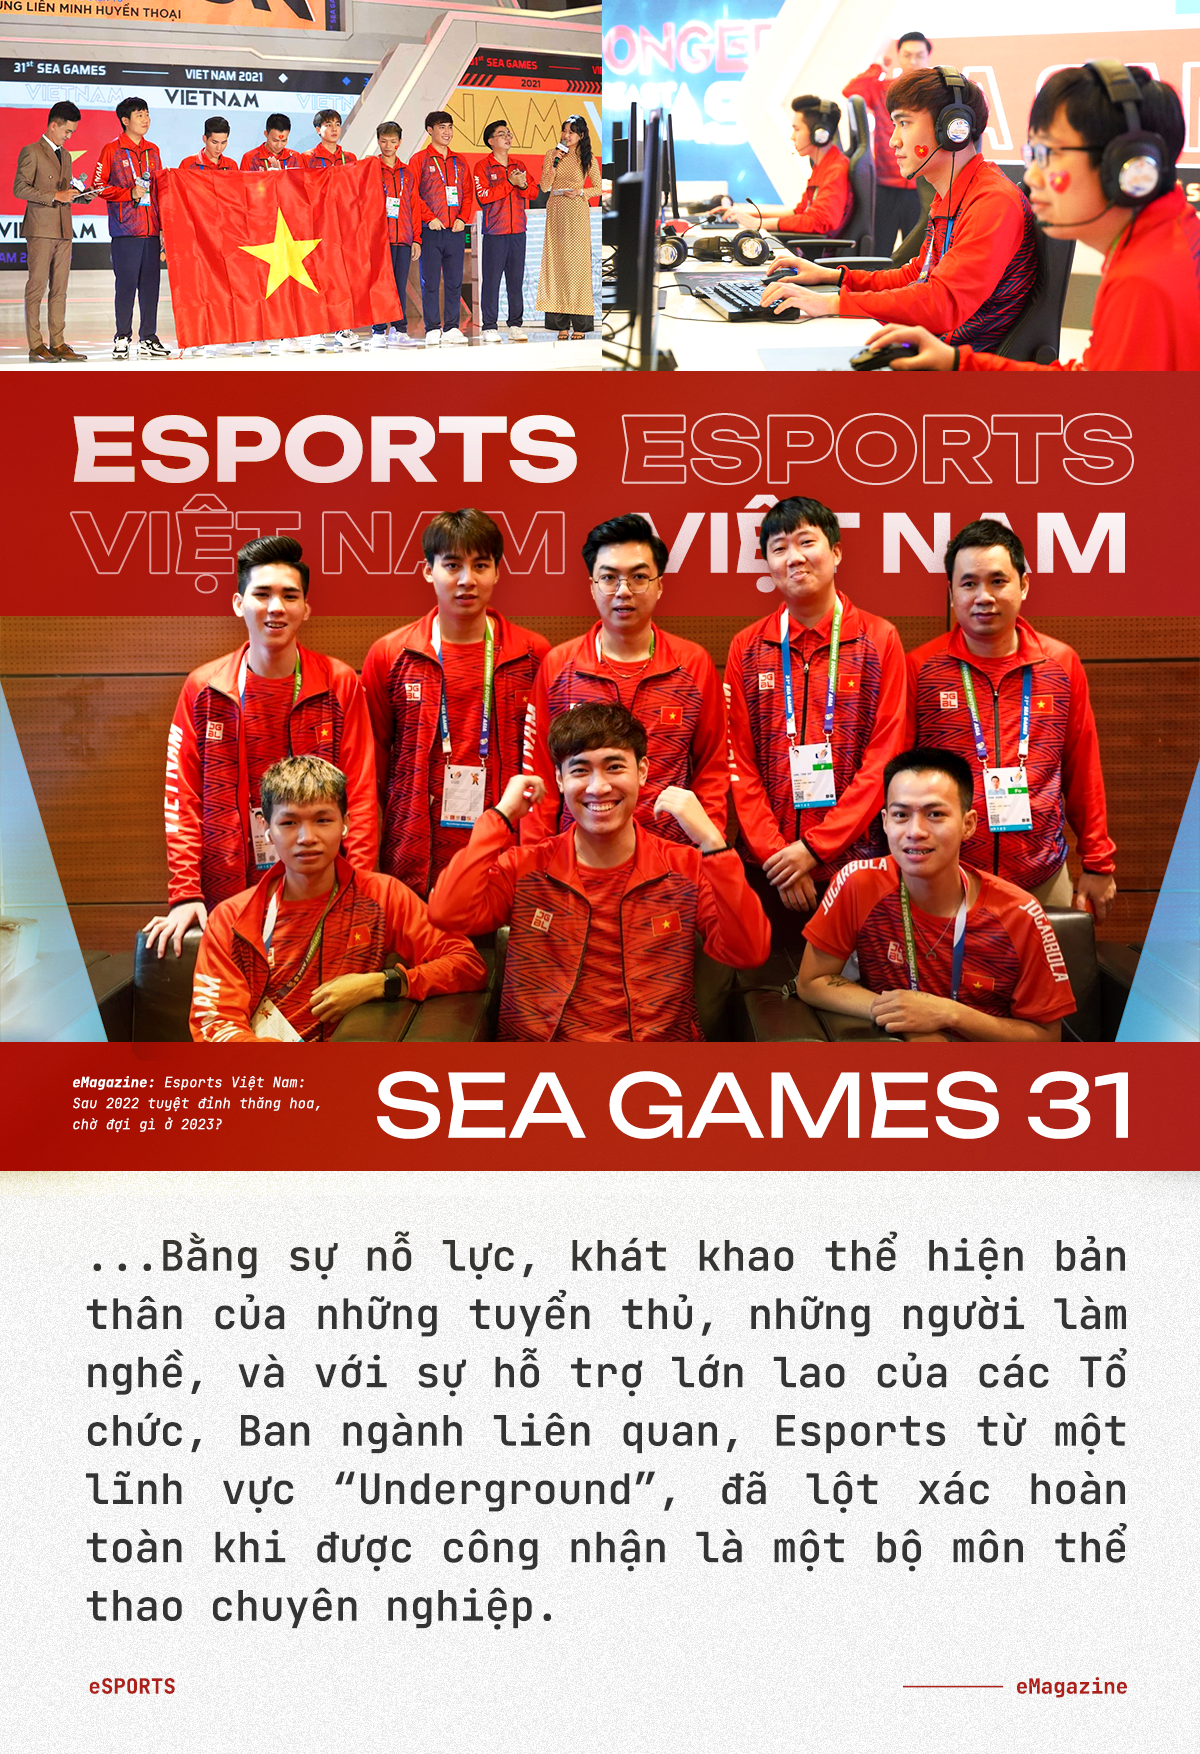 Esports Việt Nam: Sau 2022 tuyệt đỉnh thăng hoa, chờ đợi gì ở 2023? - Ảnh 2.